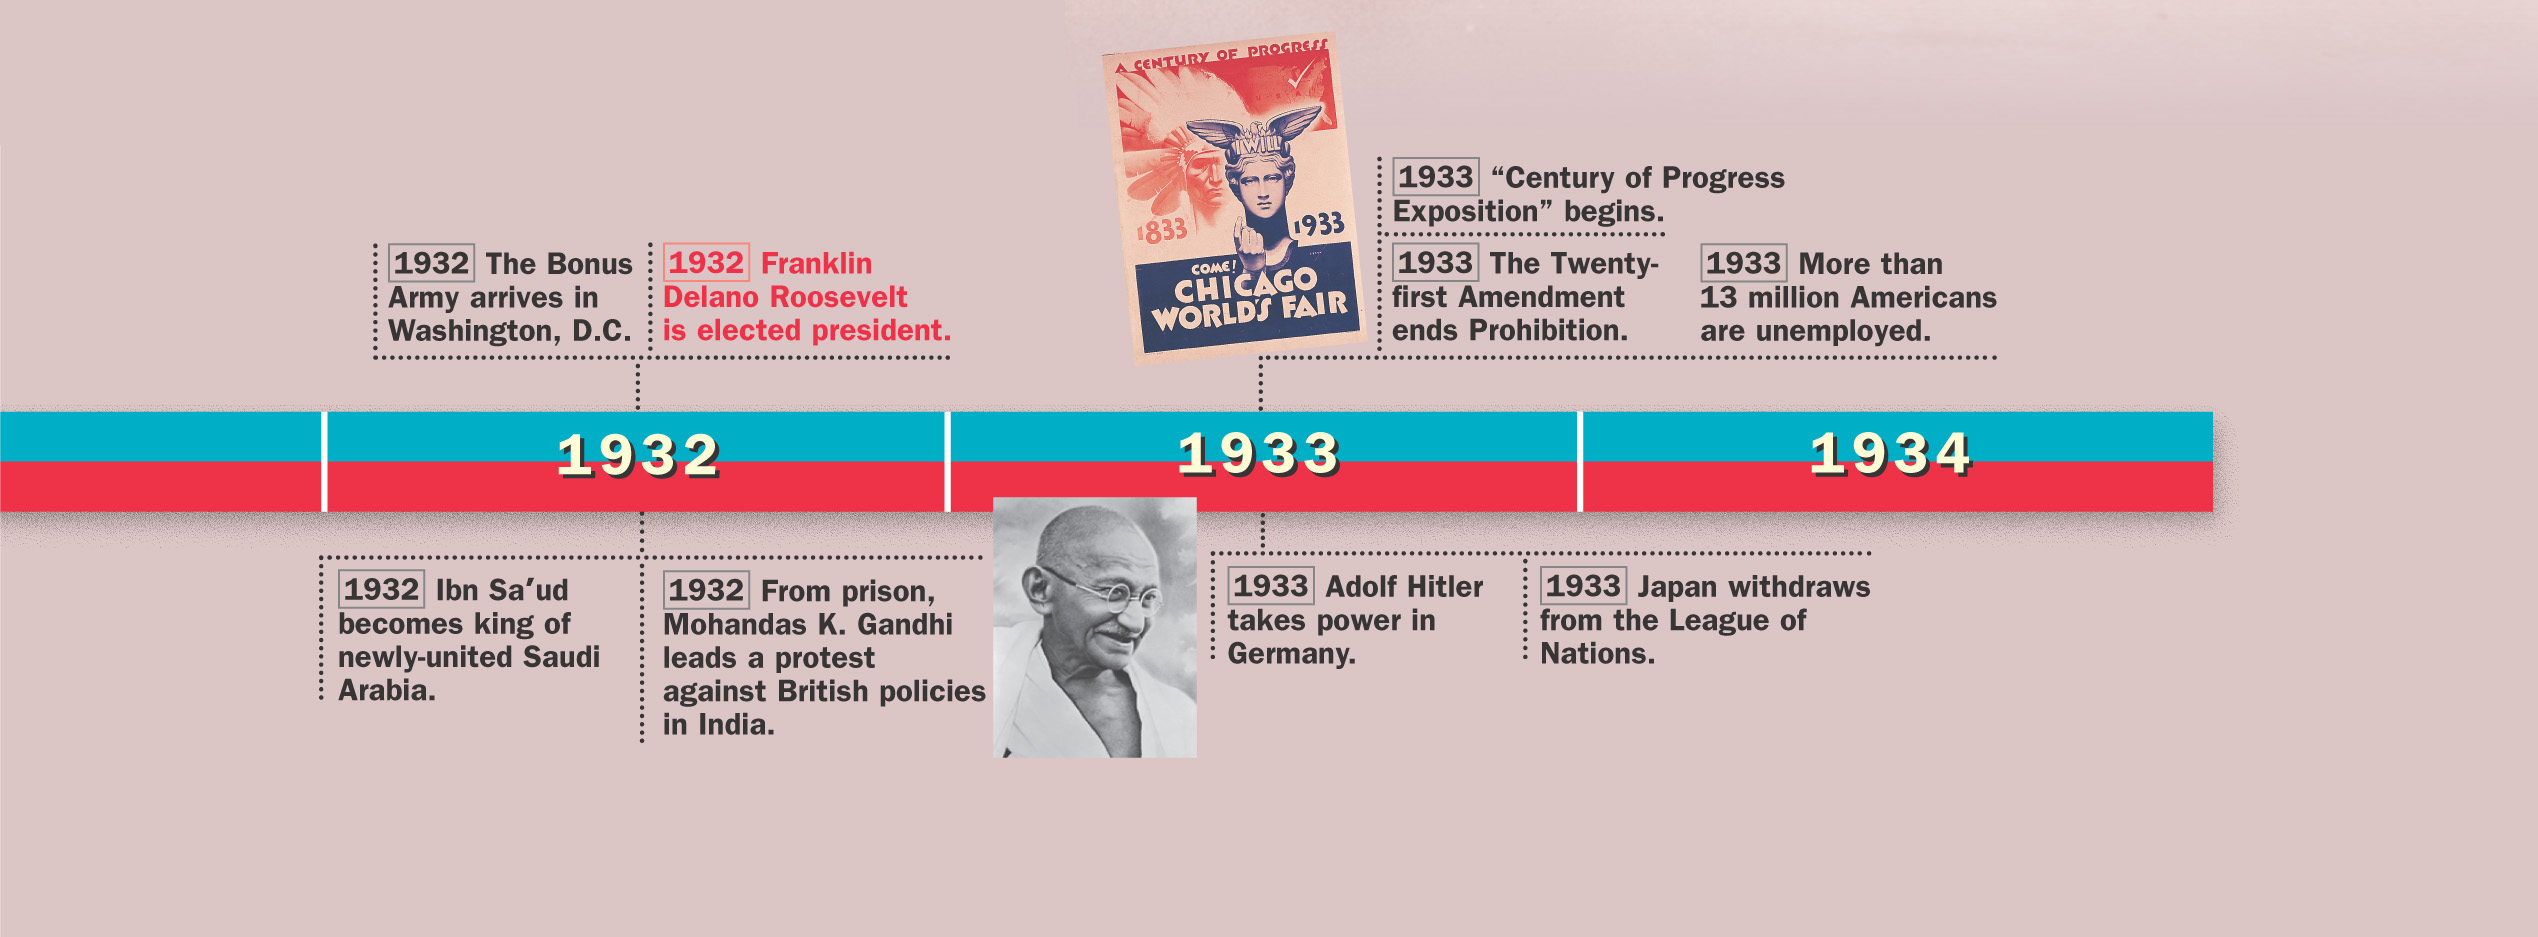 Timeline: 1931 - 1933